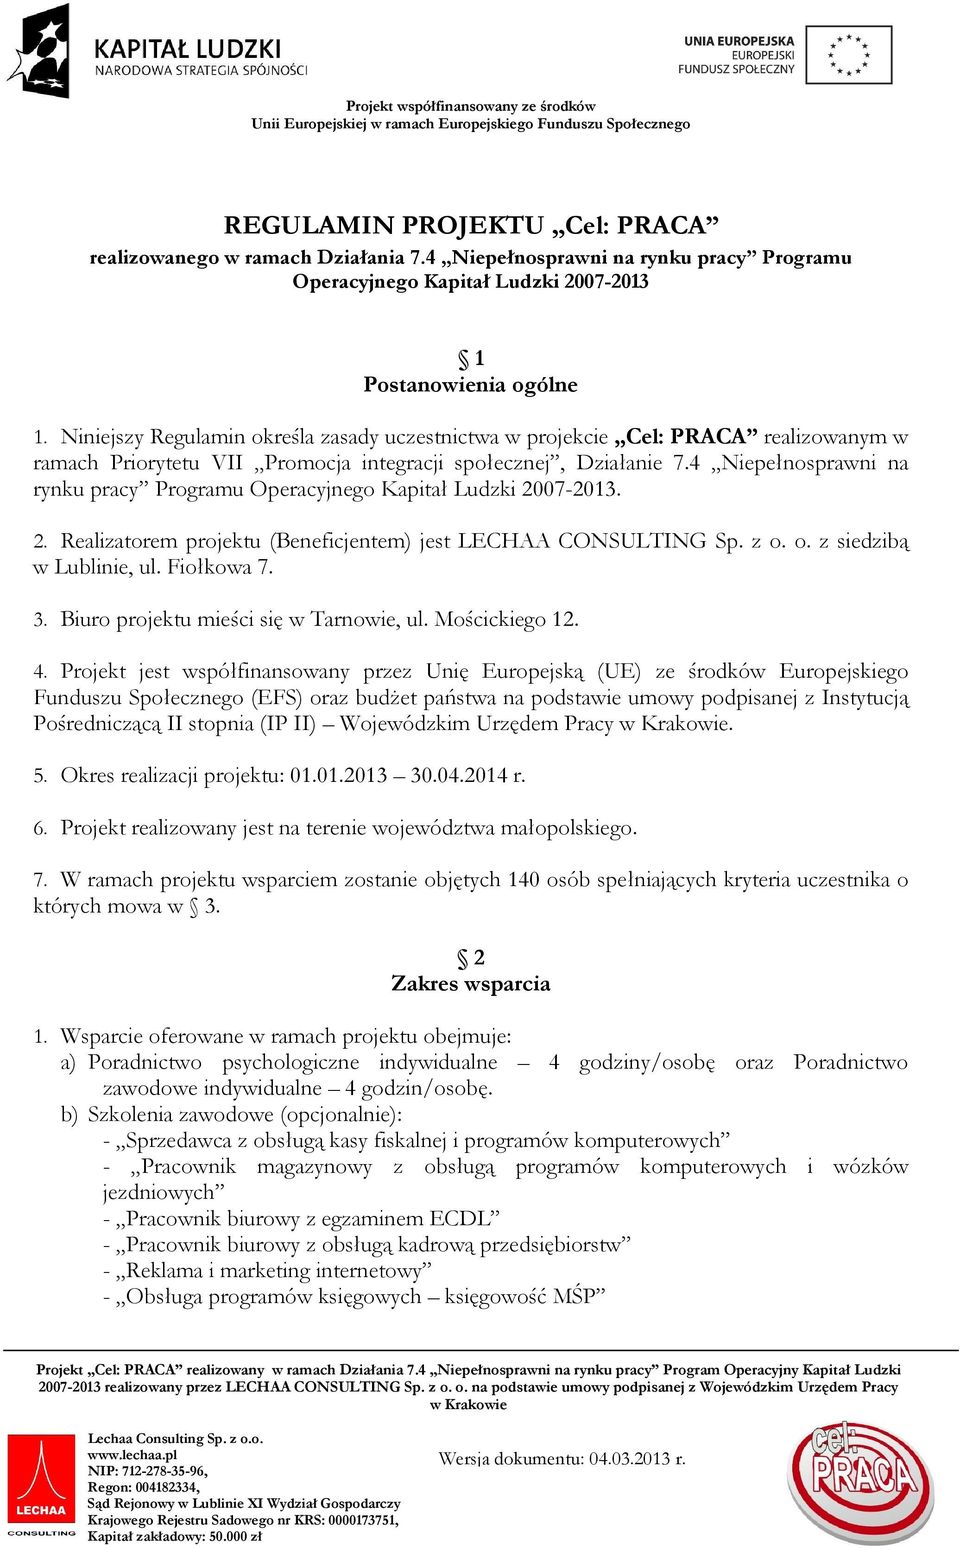 4 Niepełnosprawni na rynku pracy Programu Operacyjnego Kapitał Ludzki 2007-2013. 2. Realizatorem projektu (Beneficjentem) jest LECHAA CONSULTING Sp. z o. o. z siedzibą w Lublinie, ul. Fiołkowa 7. 3.